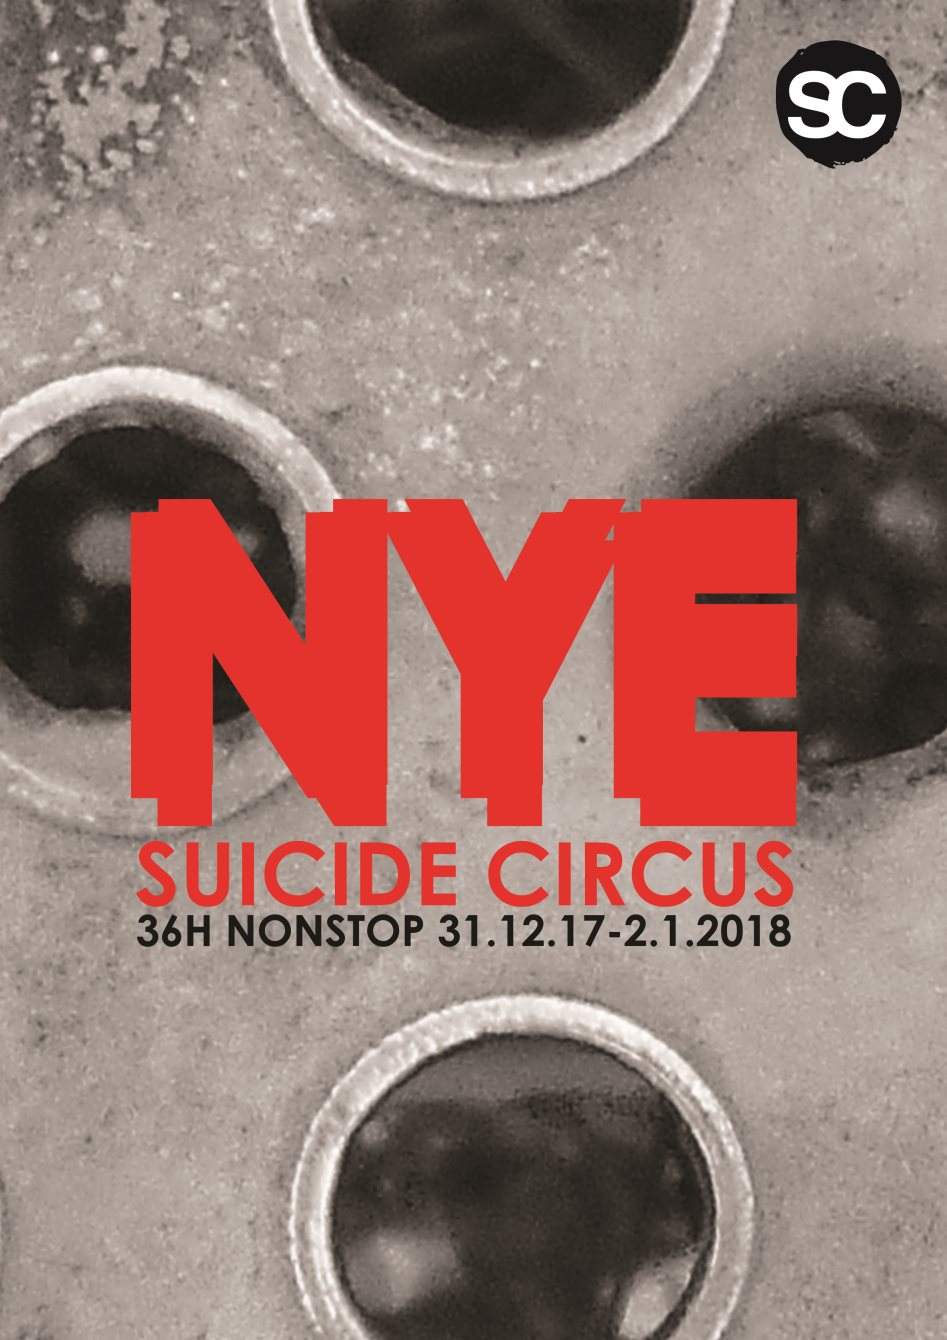 Suicide New Year 2018 - 36H Nonstop - Página frontal